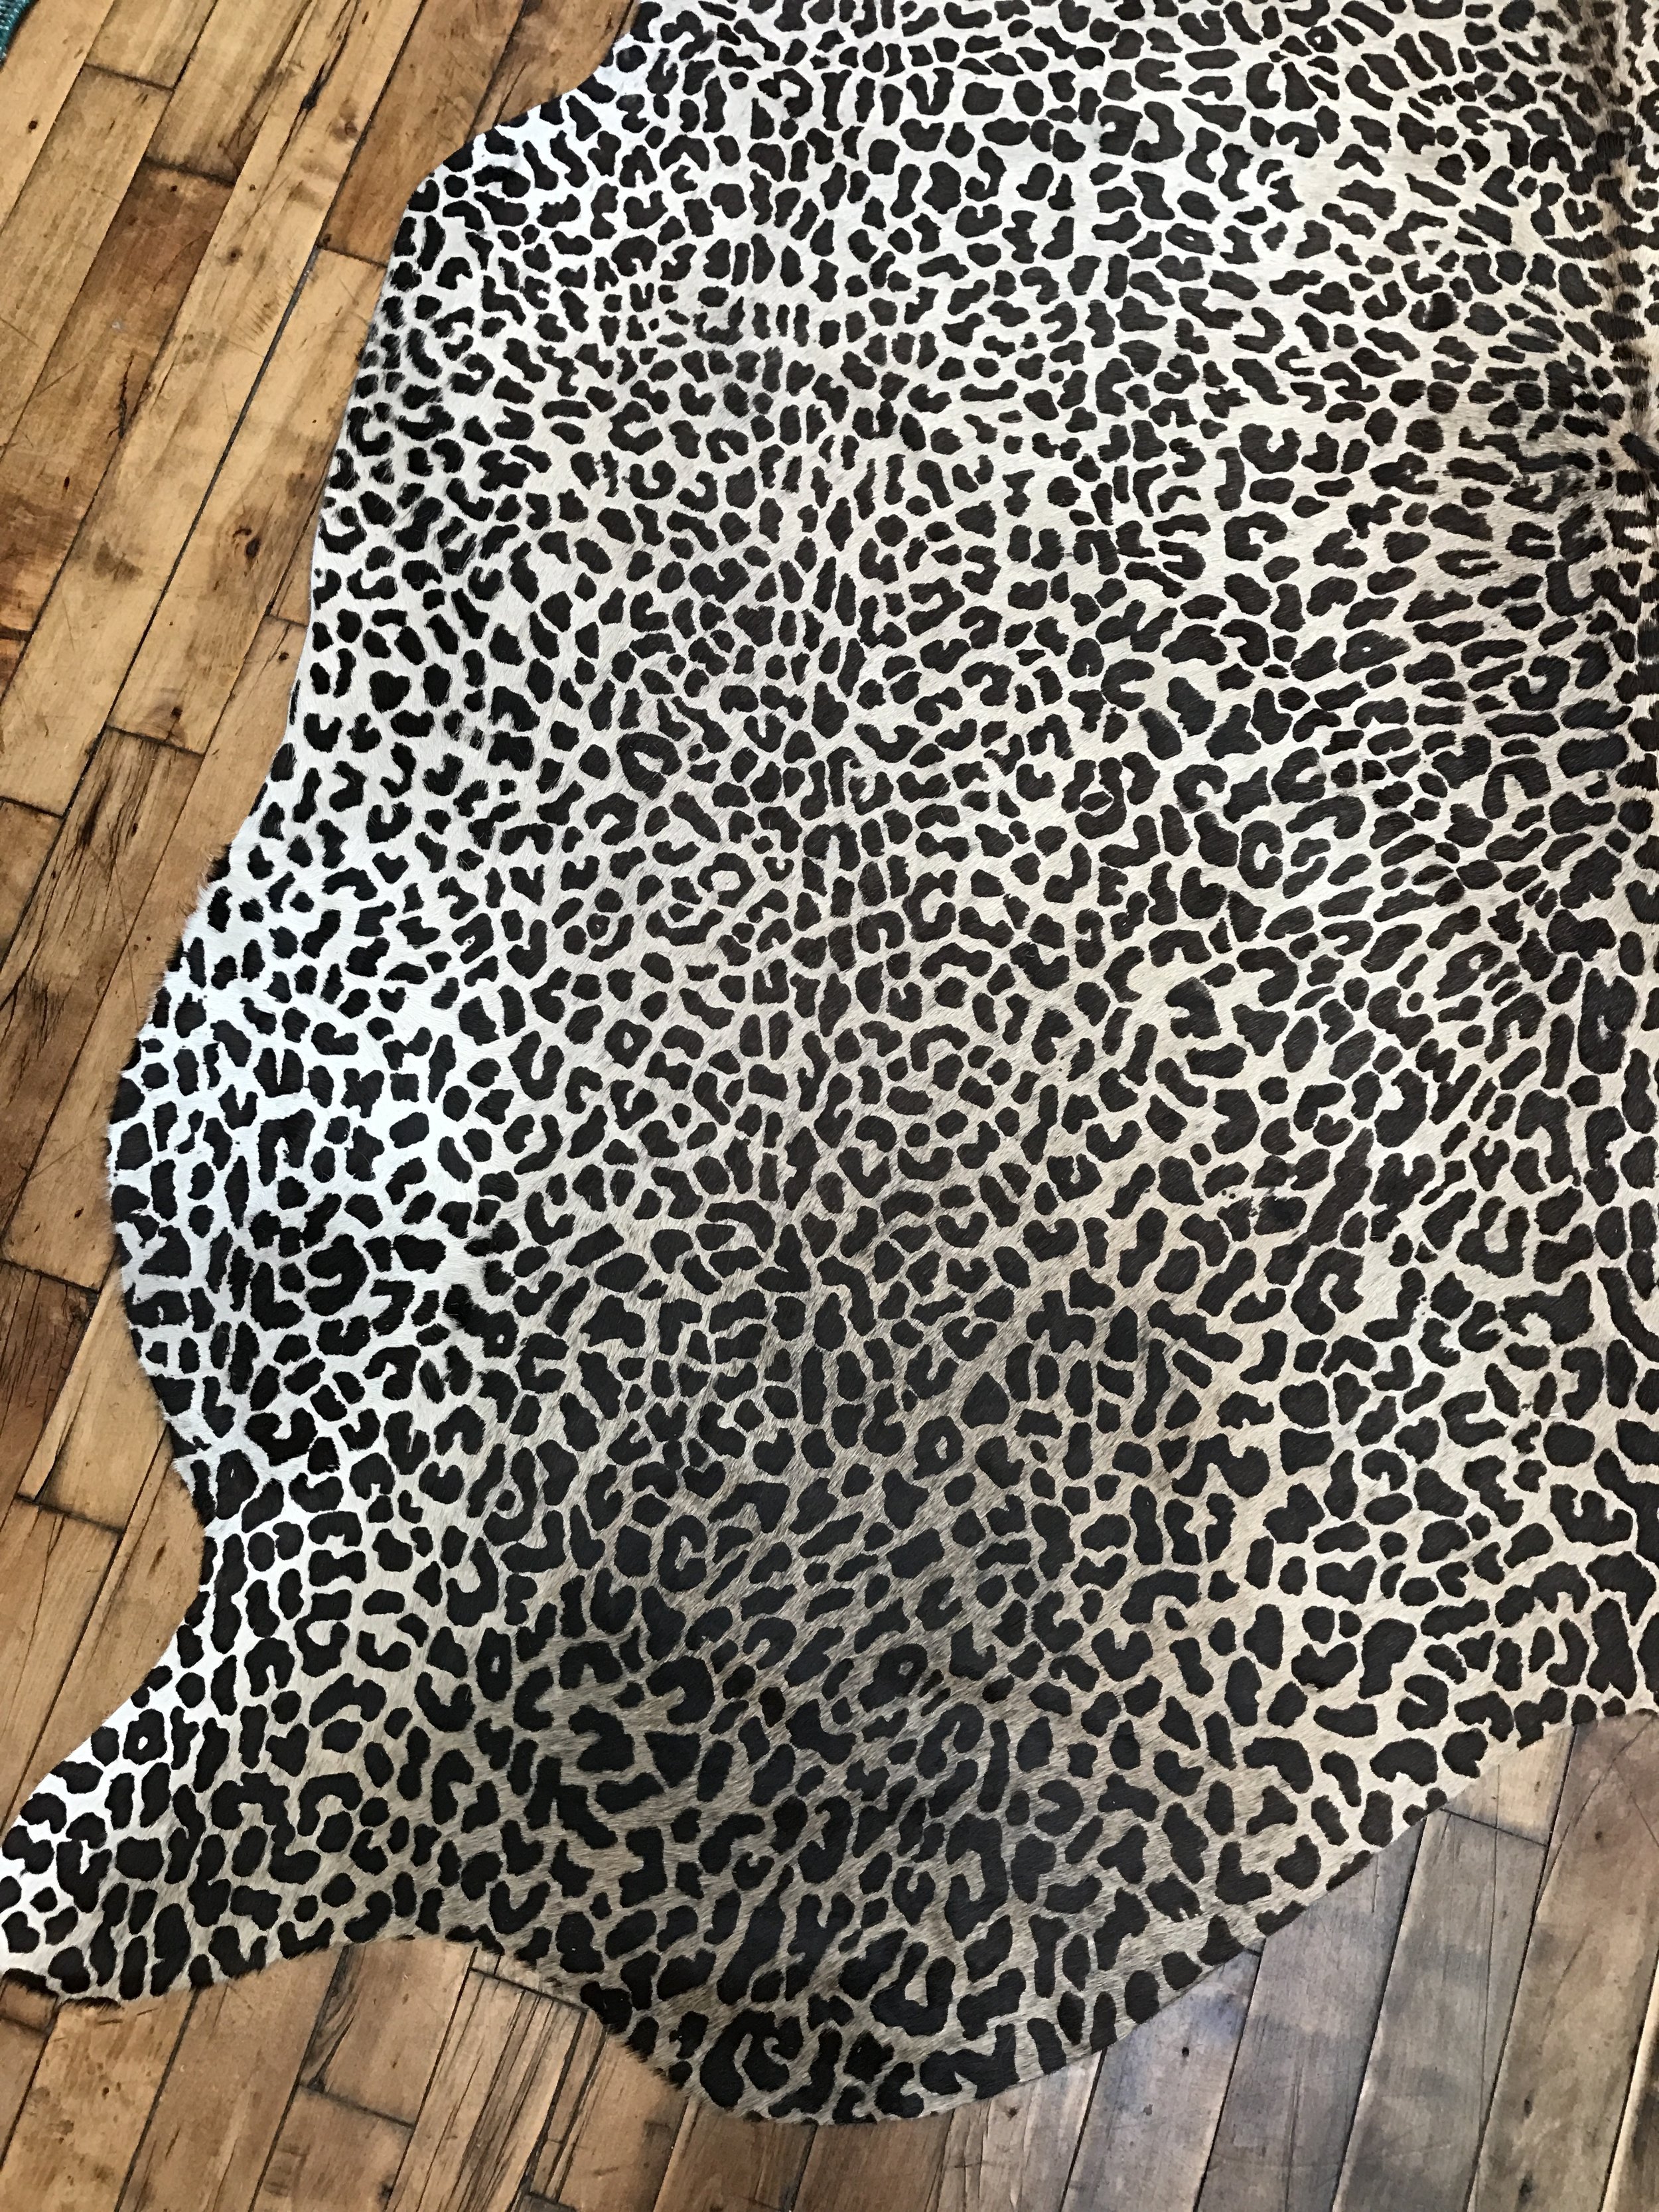 Cheetah Print Cowhide Rug Argentina South Loop Loft